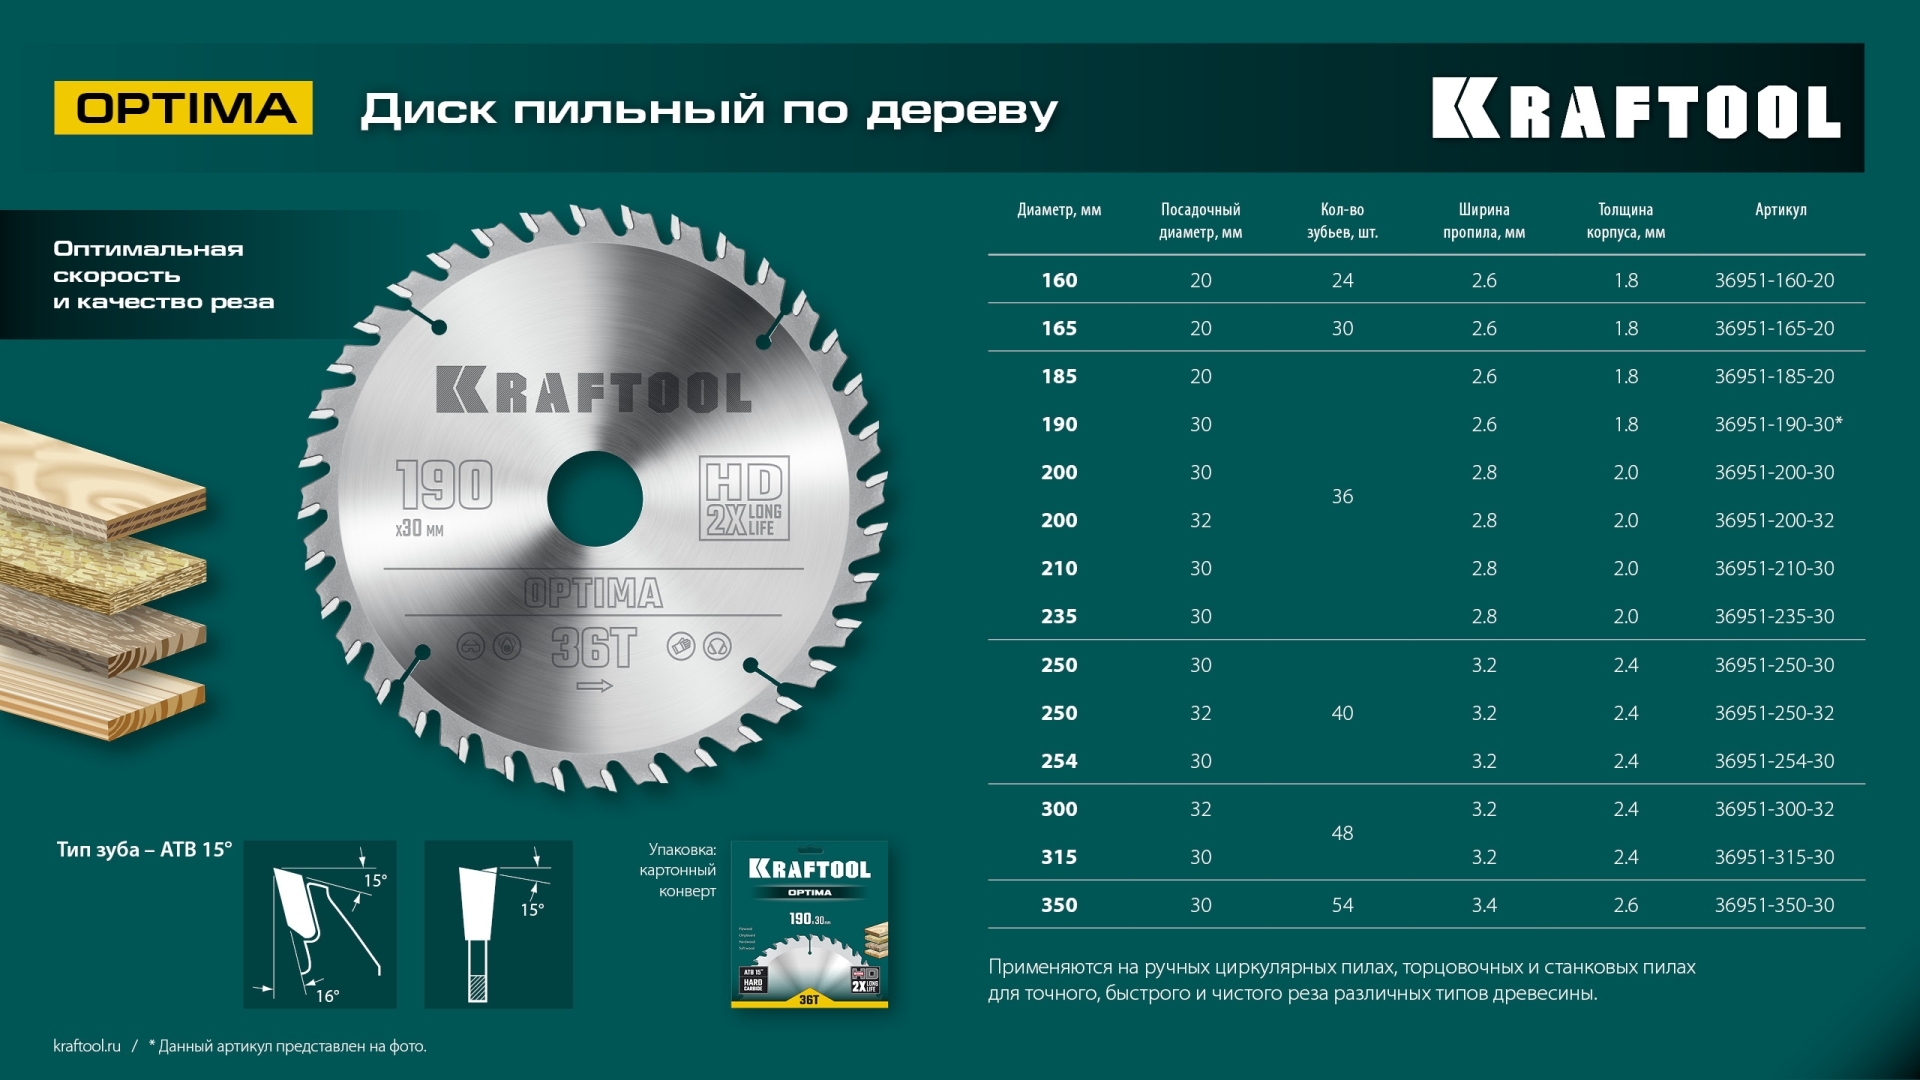 KRAFTOOL Optima, 200 х 30 мм, 36Т, пильный диск по дереву (36951-200-30)